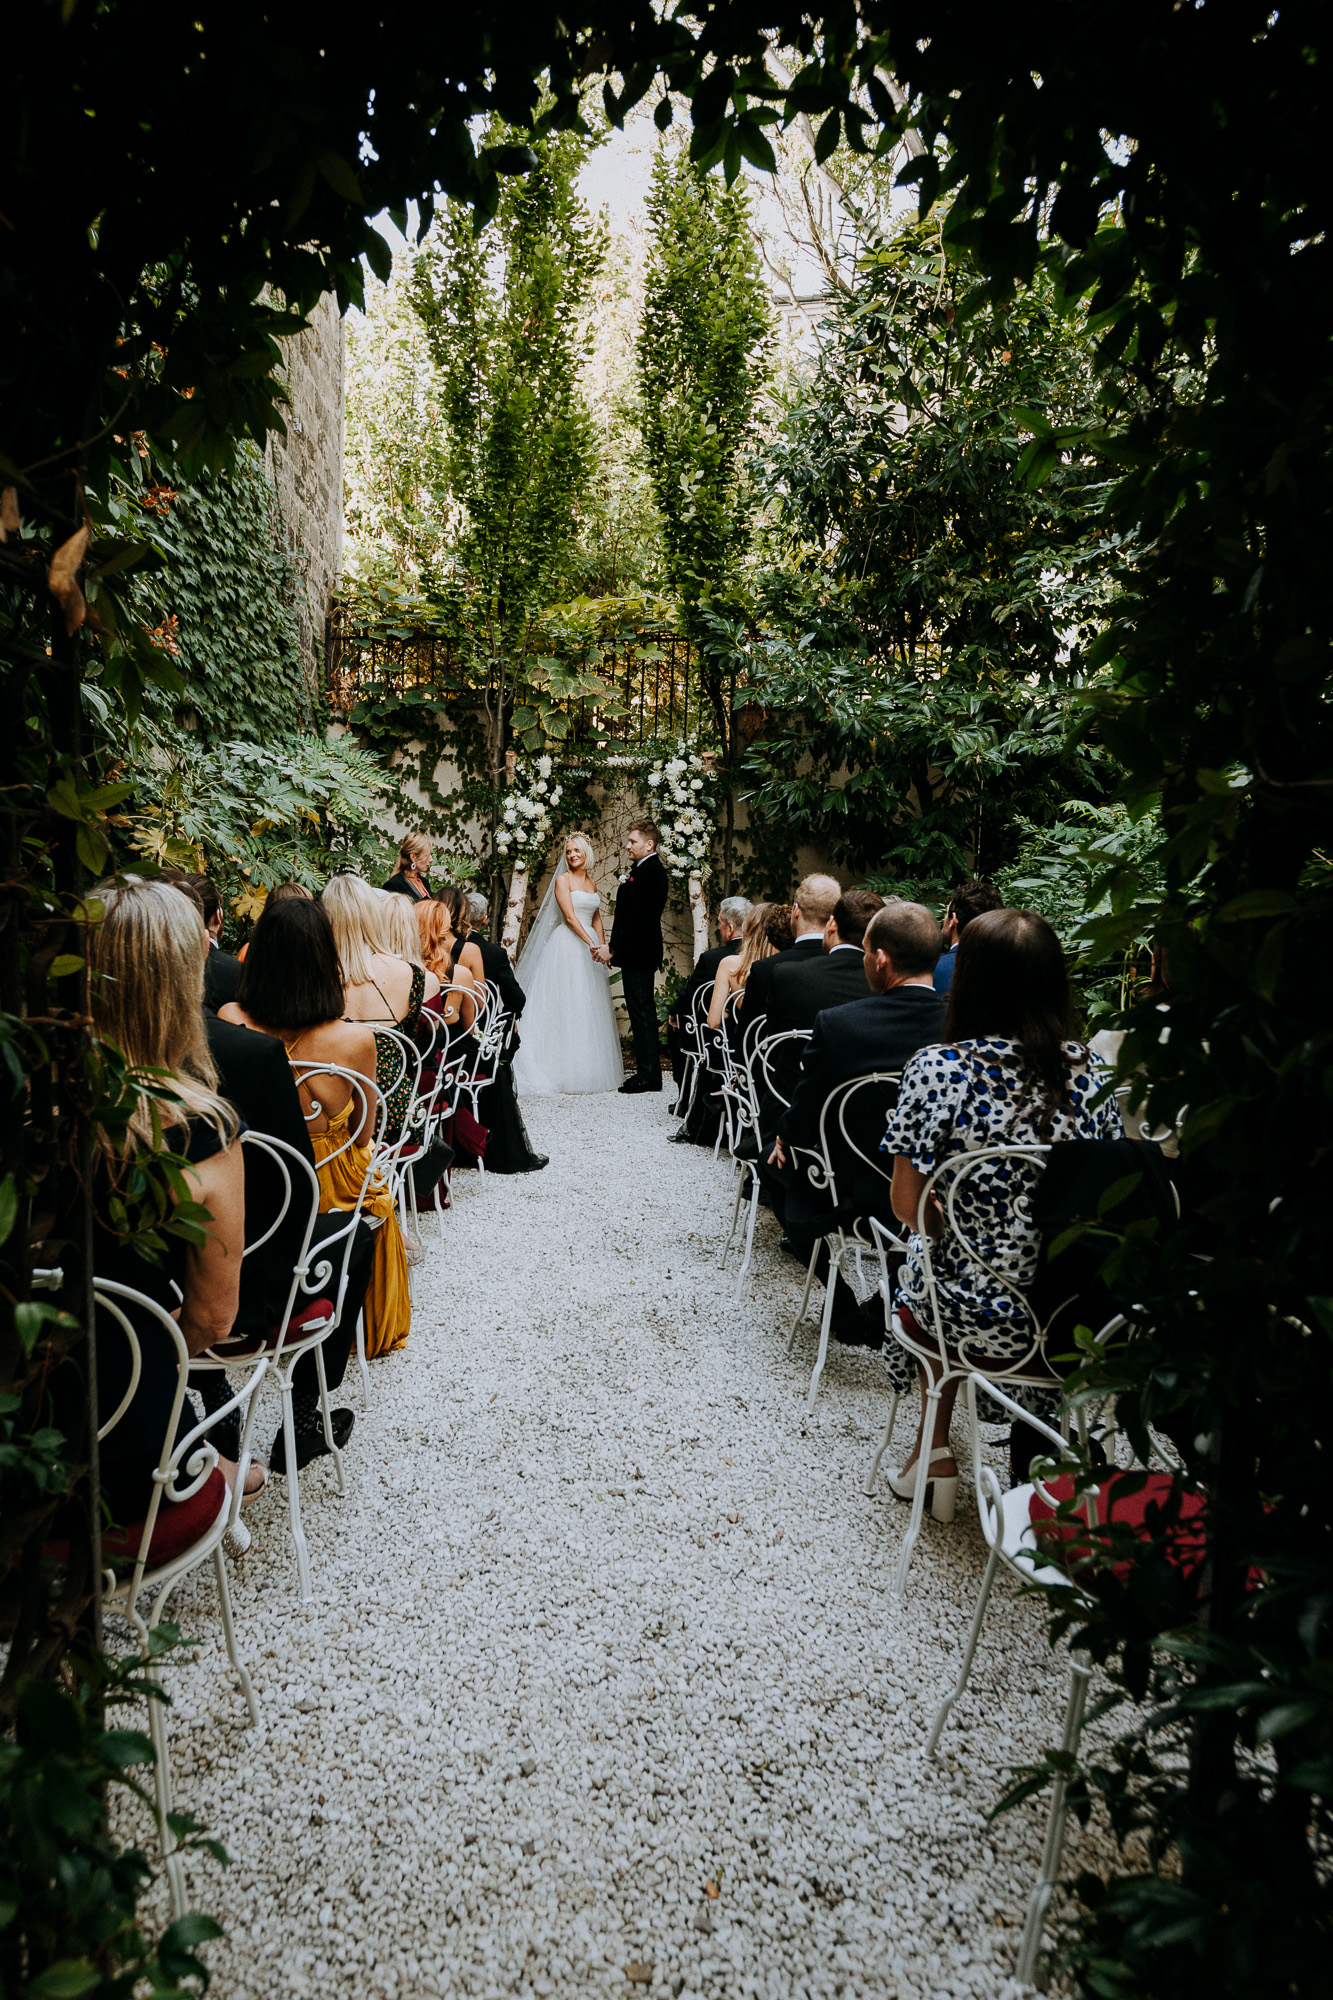 Vue d'ensemble du coin de jardin réservé aux cérémonies de mariage à l'hôtel particulier de Montmartre